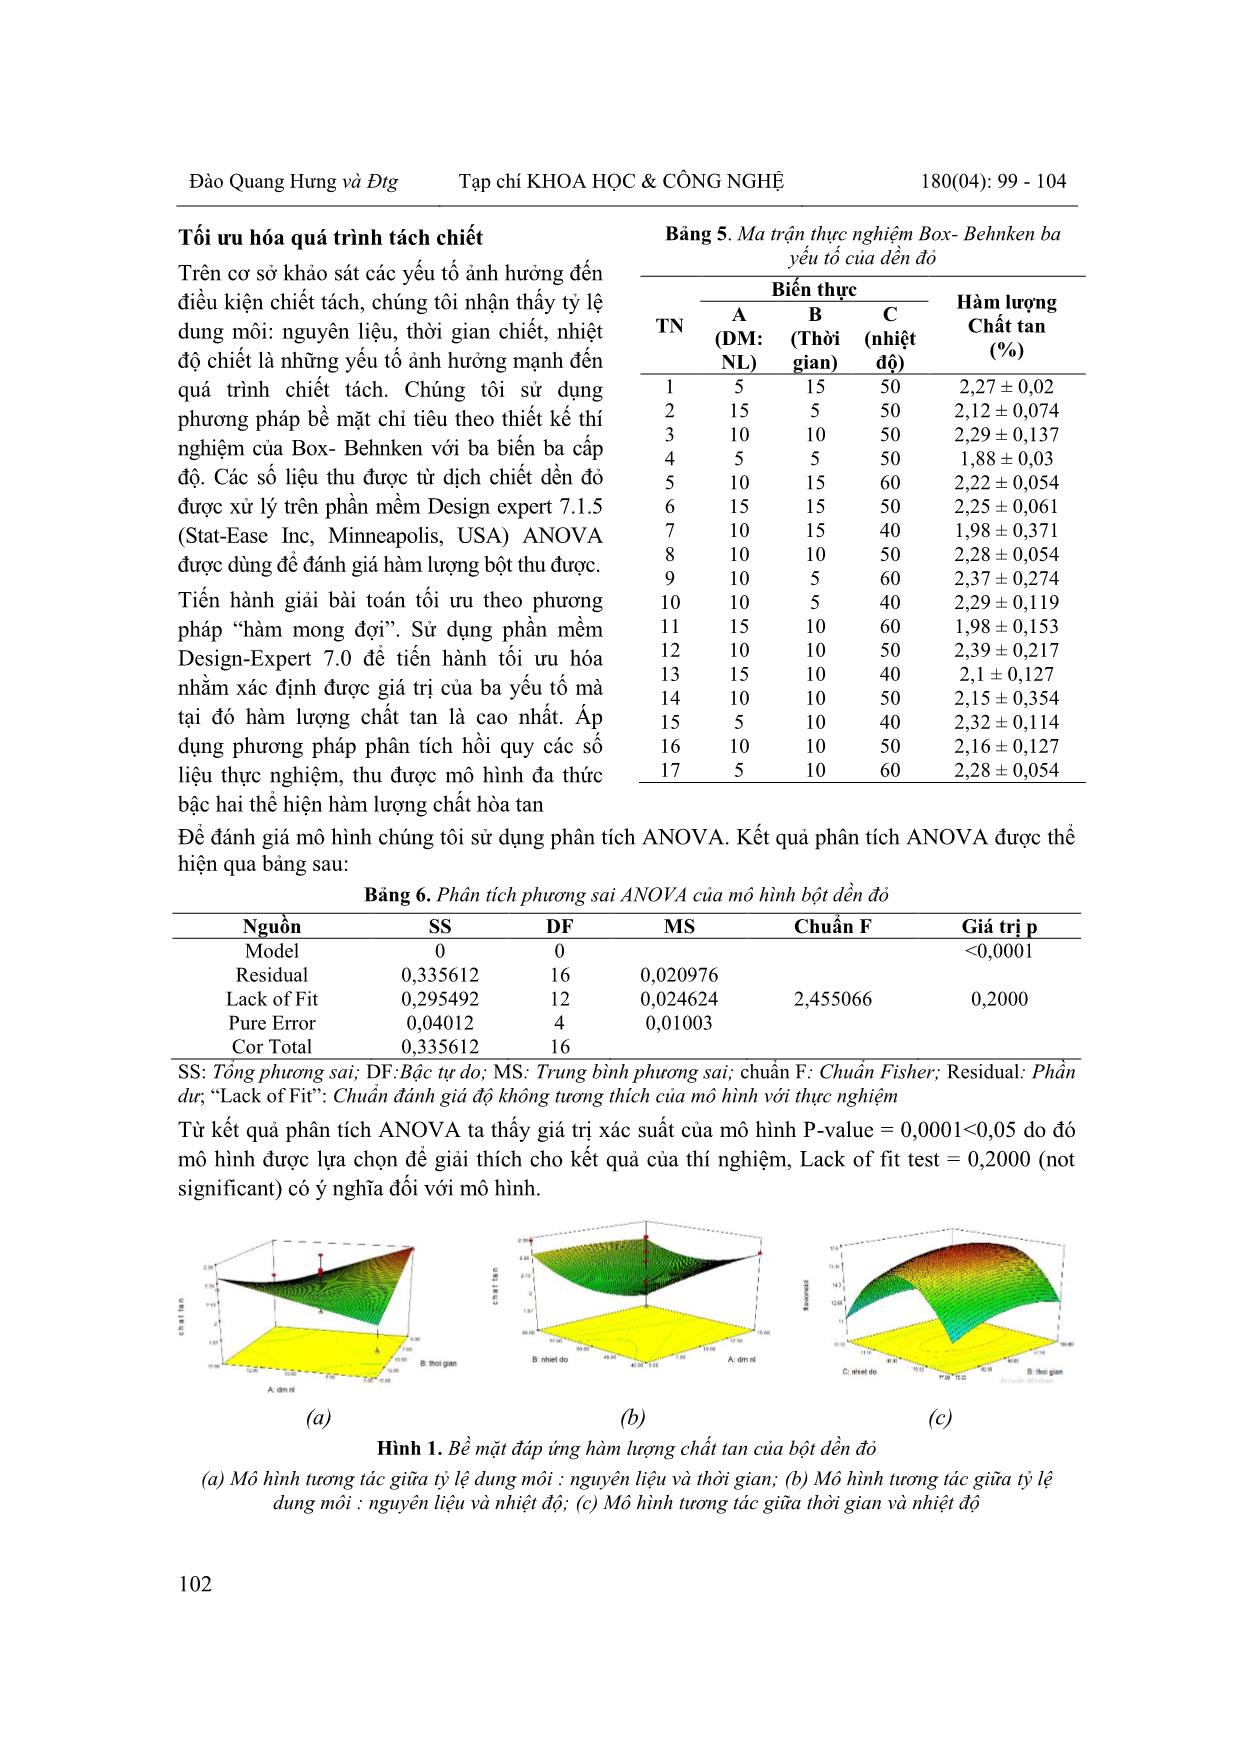 Nghiên cứu sản xuất bột từ cây rau dền đỏ (amaranthus tricolor) [1] và ứng dụng vào sản xuất cháo dinh dưỡng trang 4